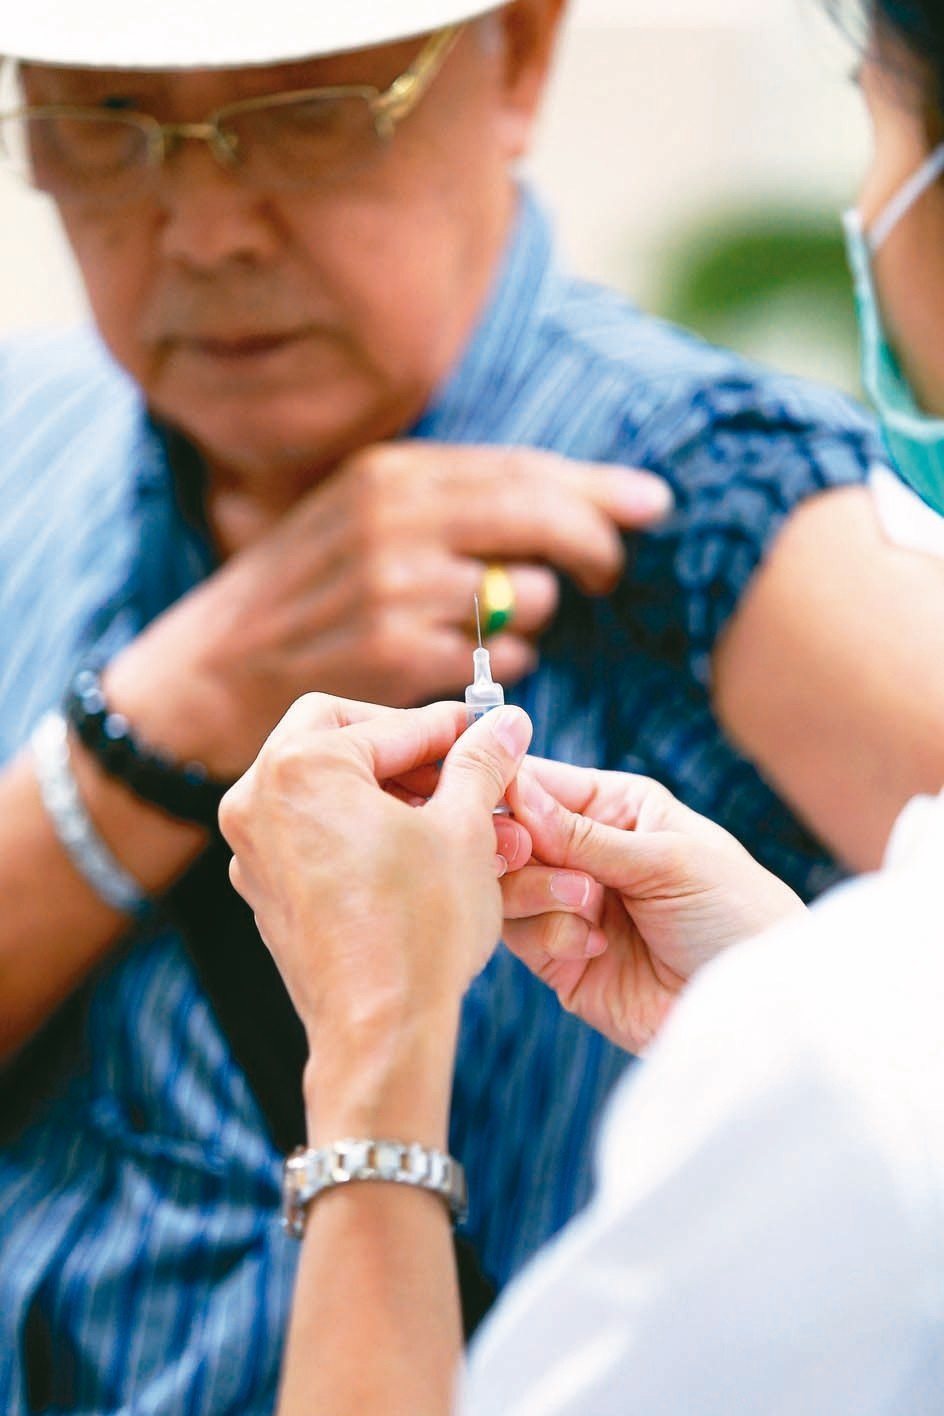 老年人易有慢性病，為肺炎高危險族群，醫師建議施打疫苗。